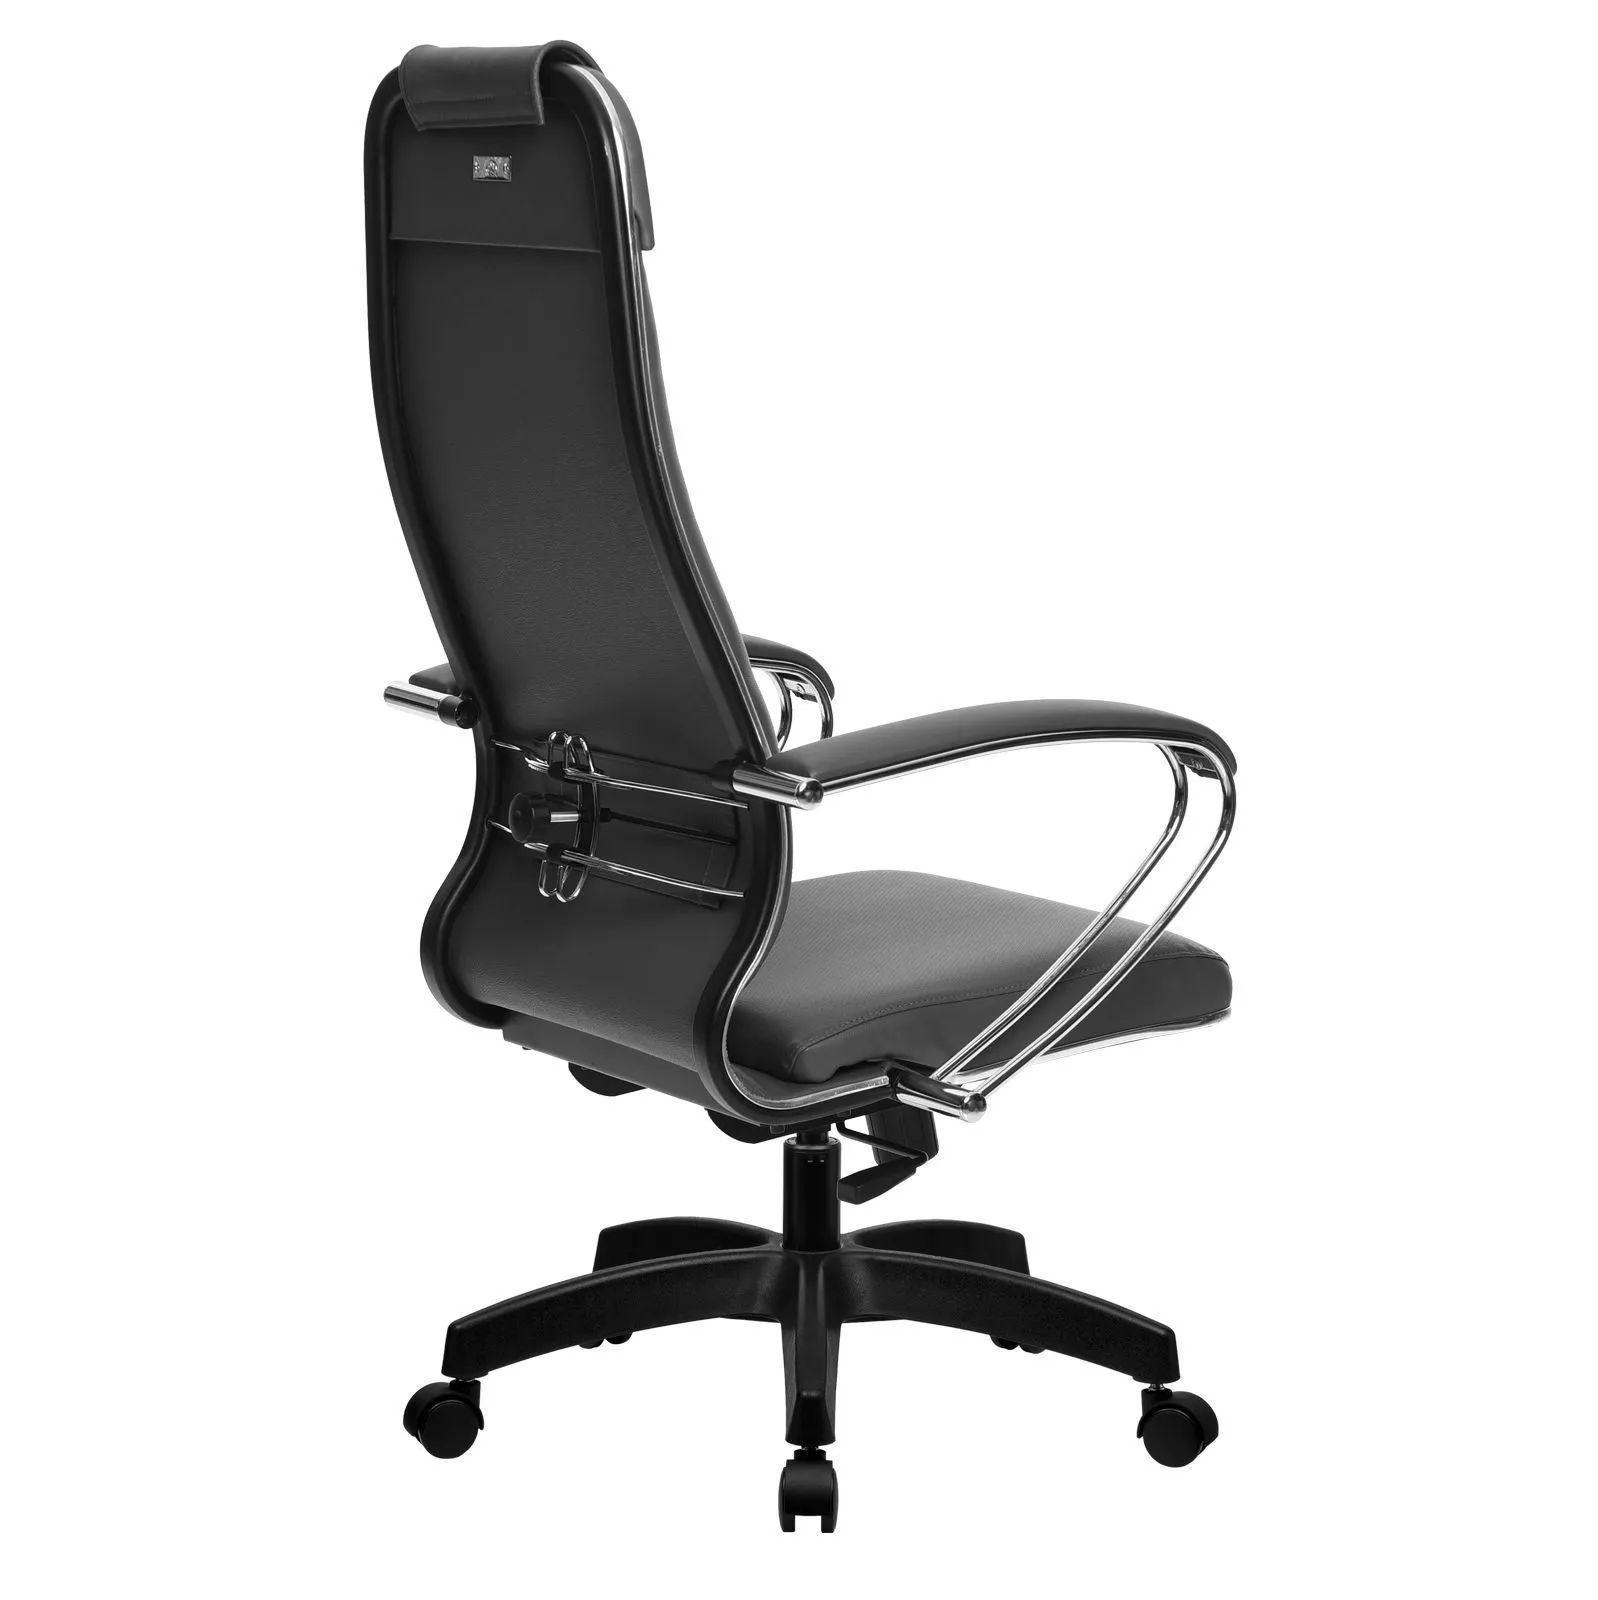 Кресло компьютерное Метта Комплект 29 Pl серый